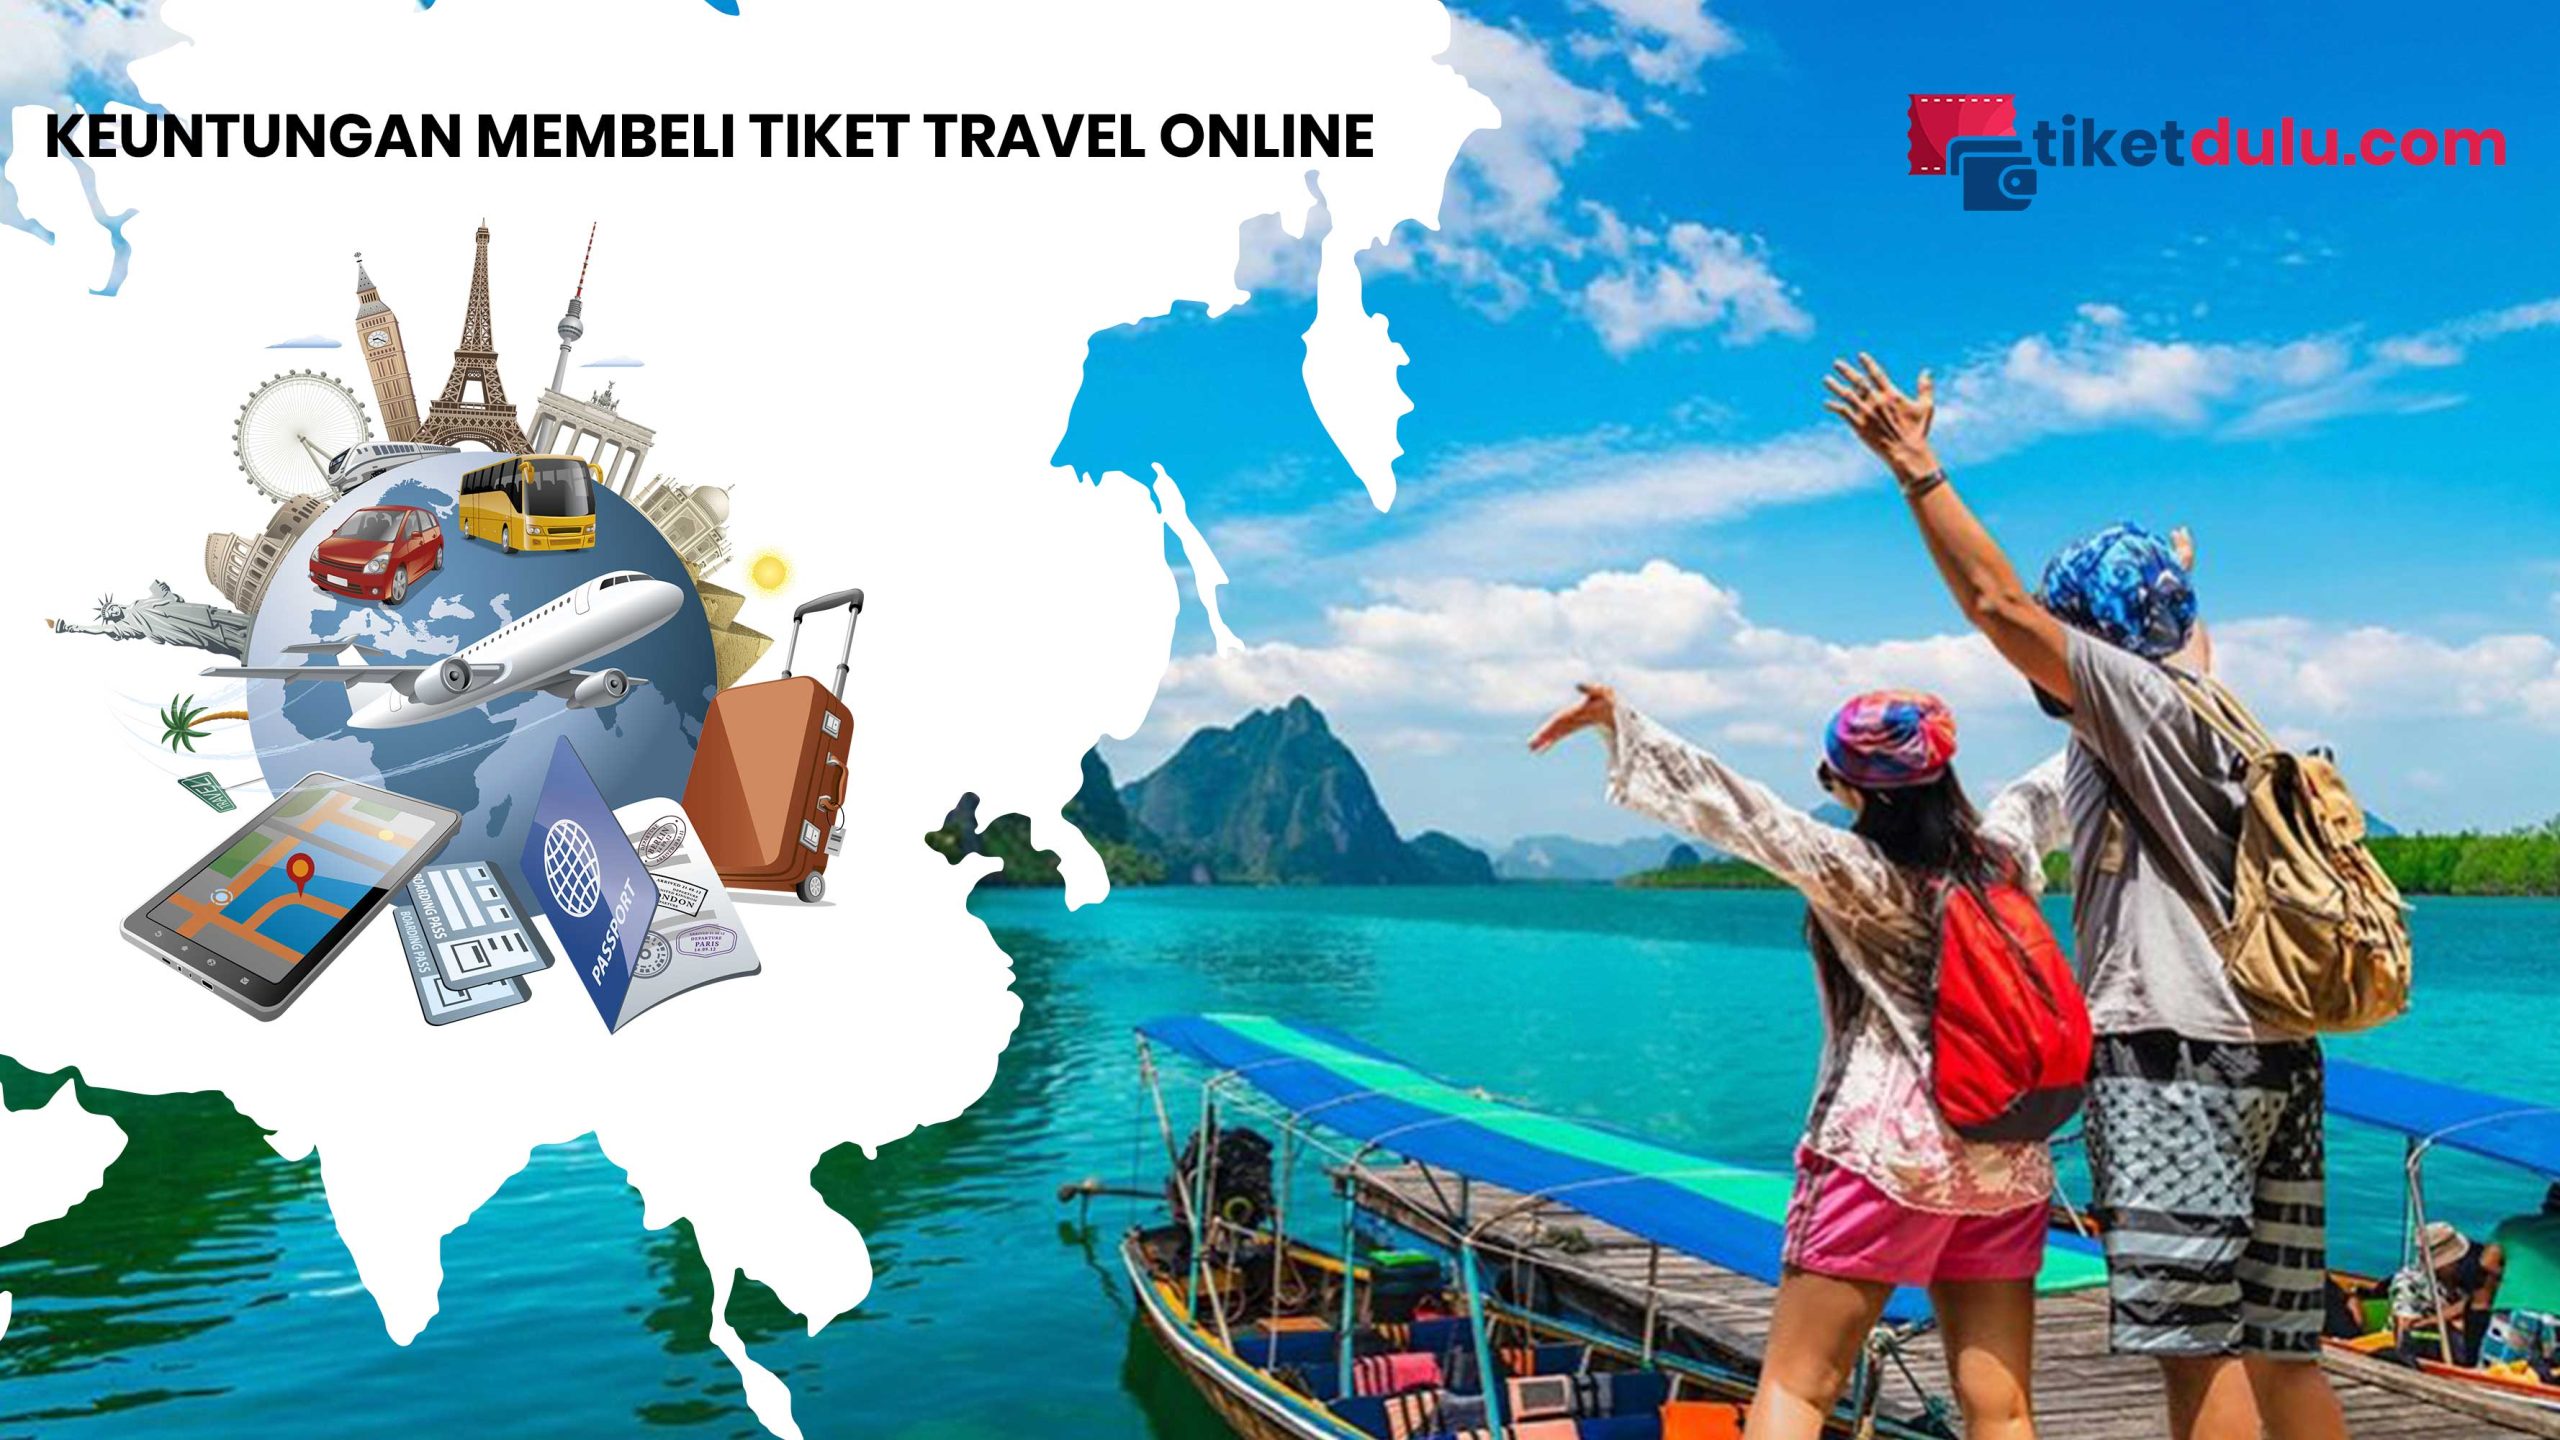 Keuntungan Membeli Tiket Travel Online